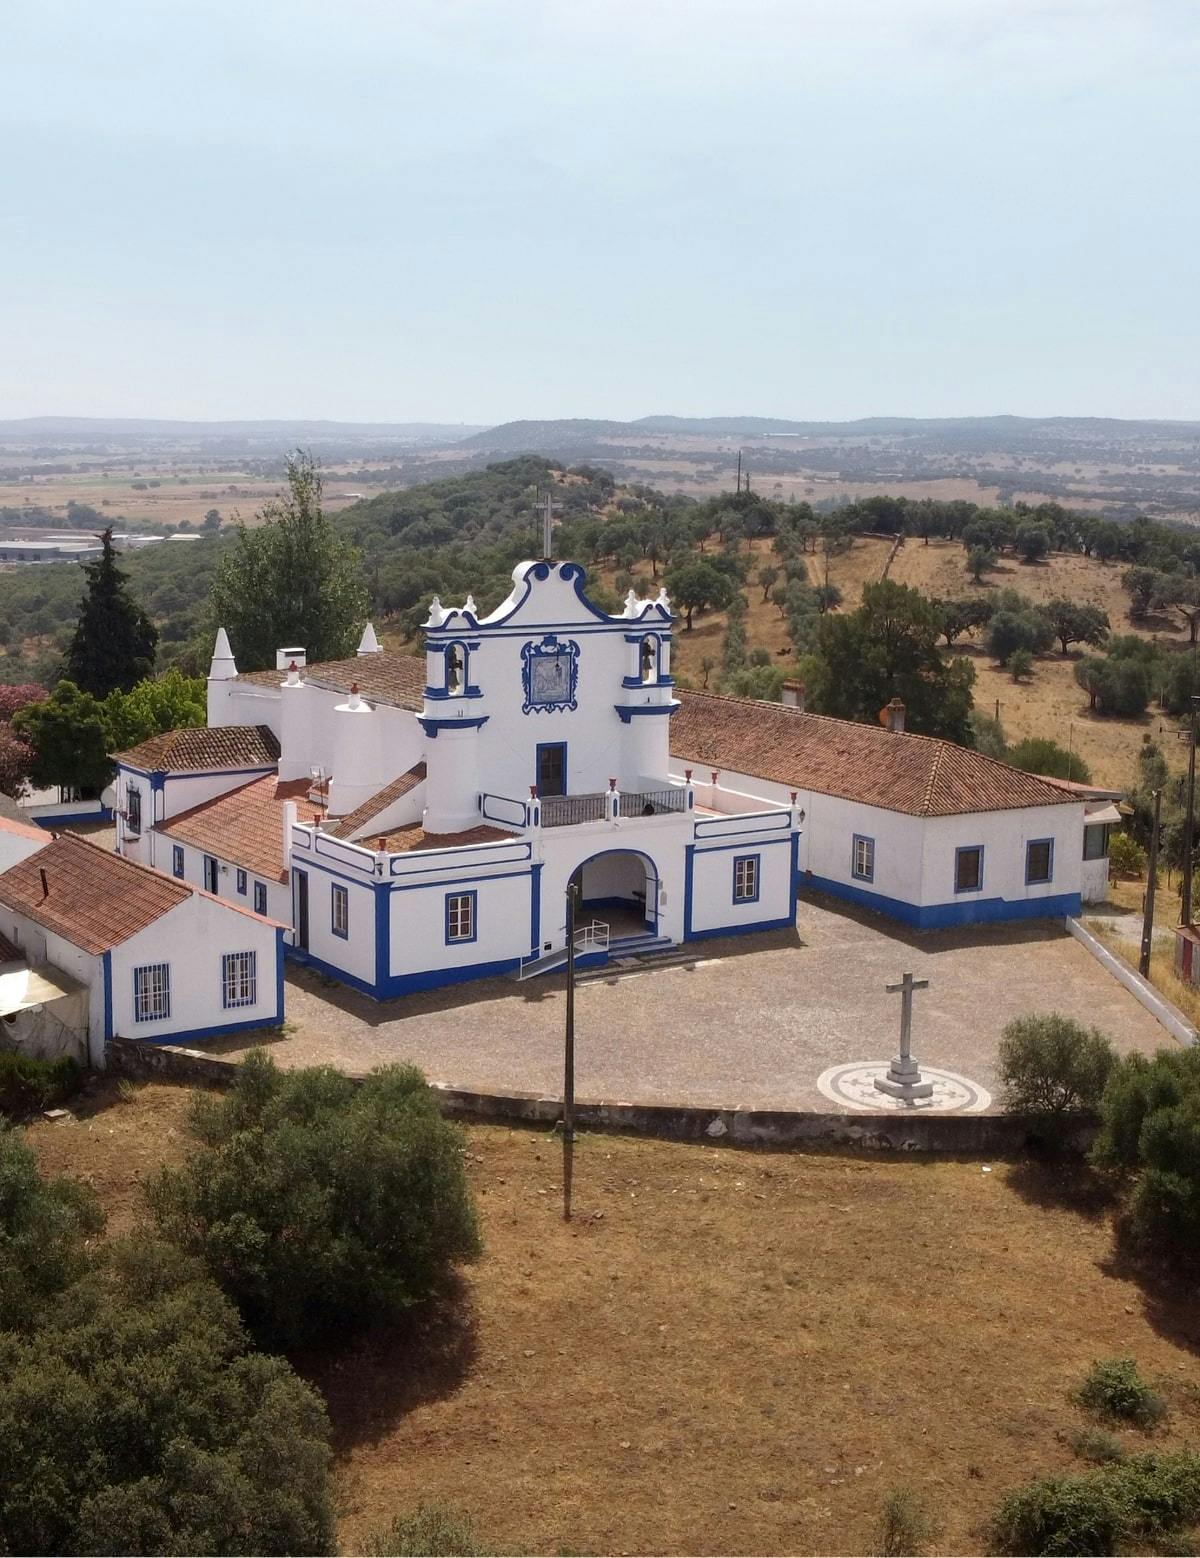 The Hermitage of Nossa Senhora da Visitação (Our Lady of the Visitation)